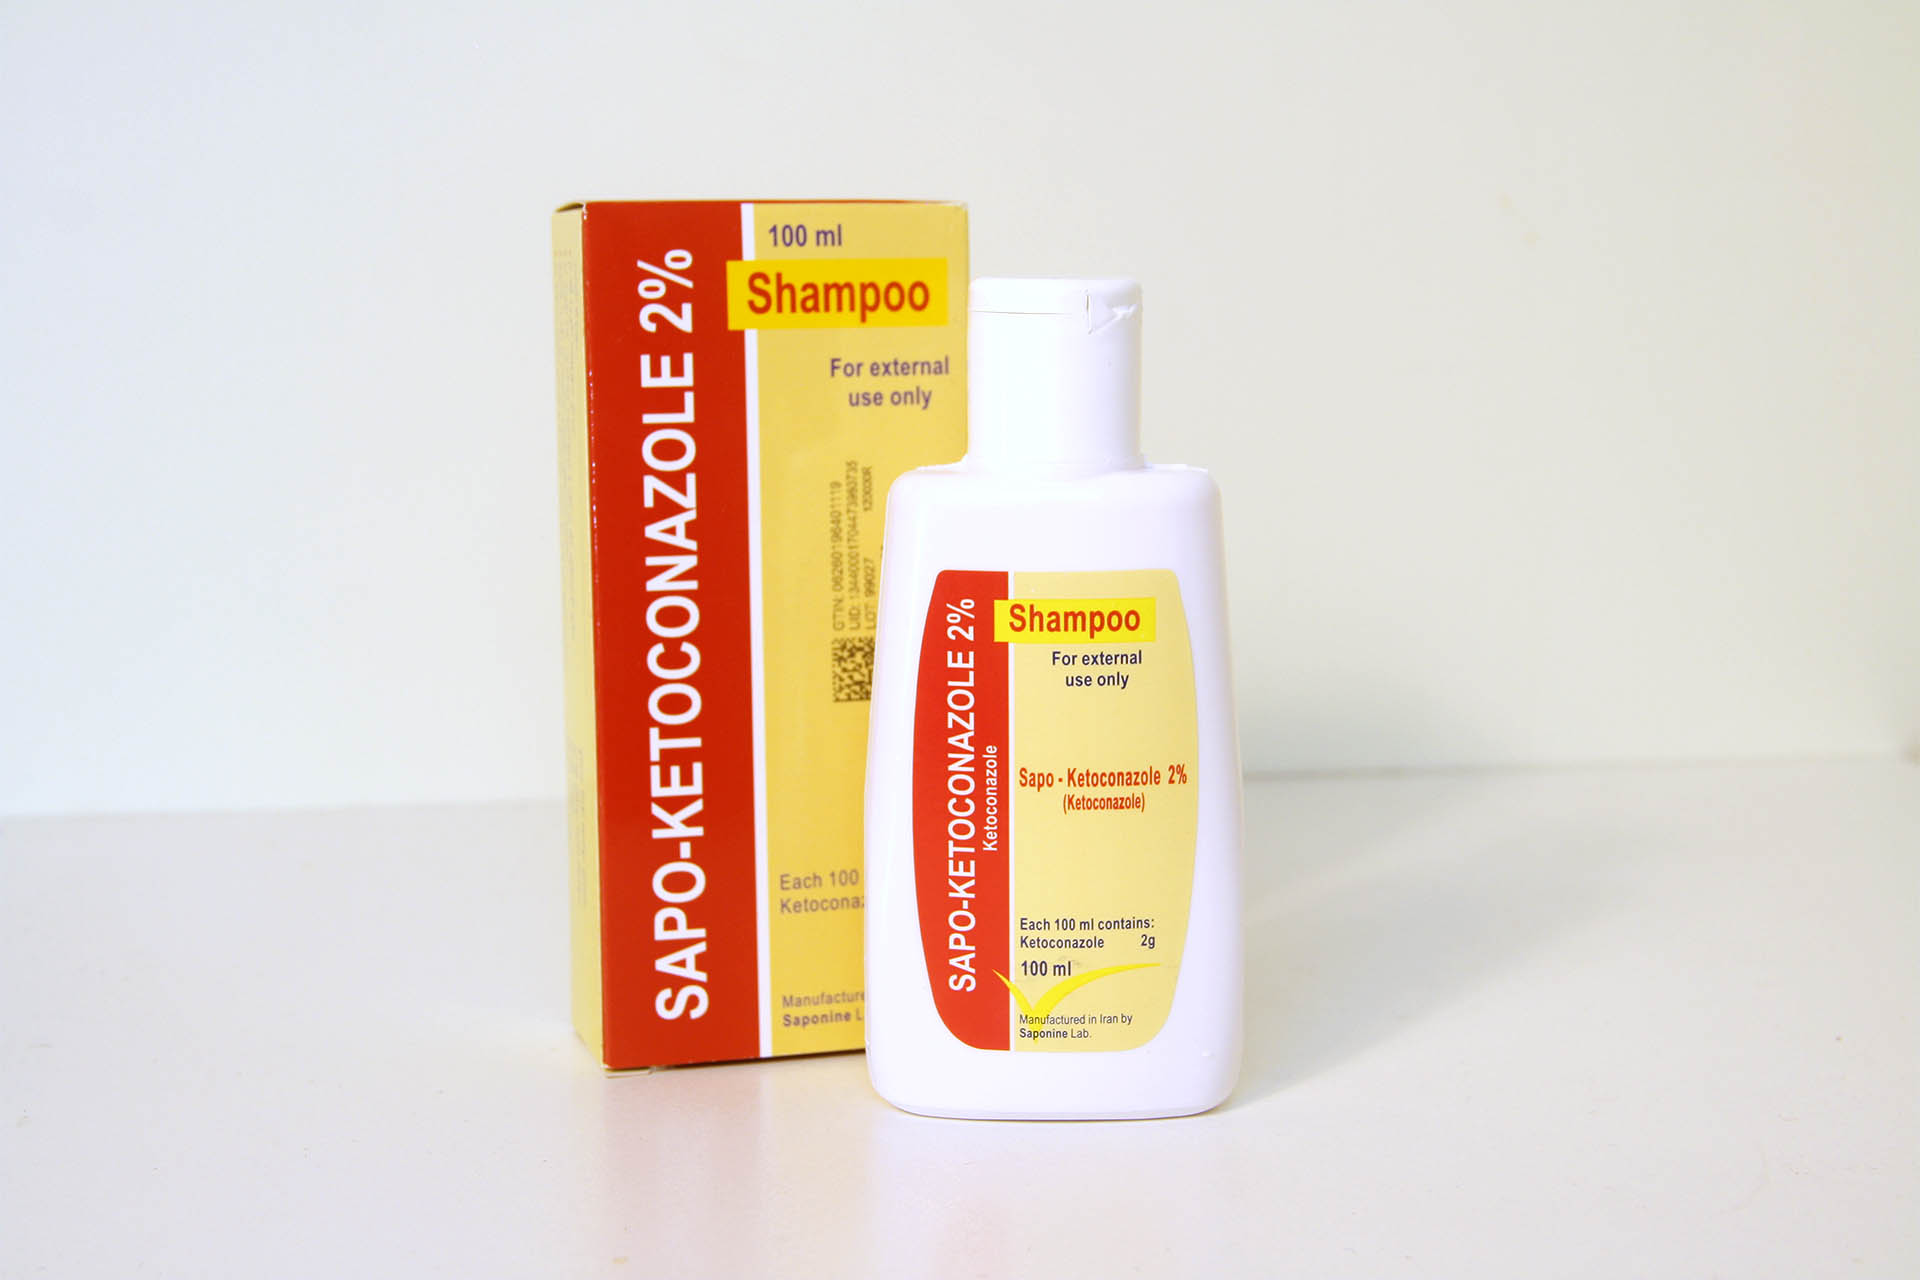 Sapo-Ketoconazole 2% Shampoo